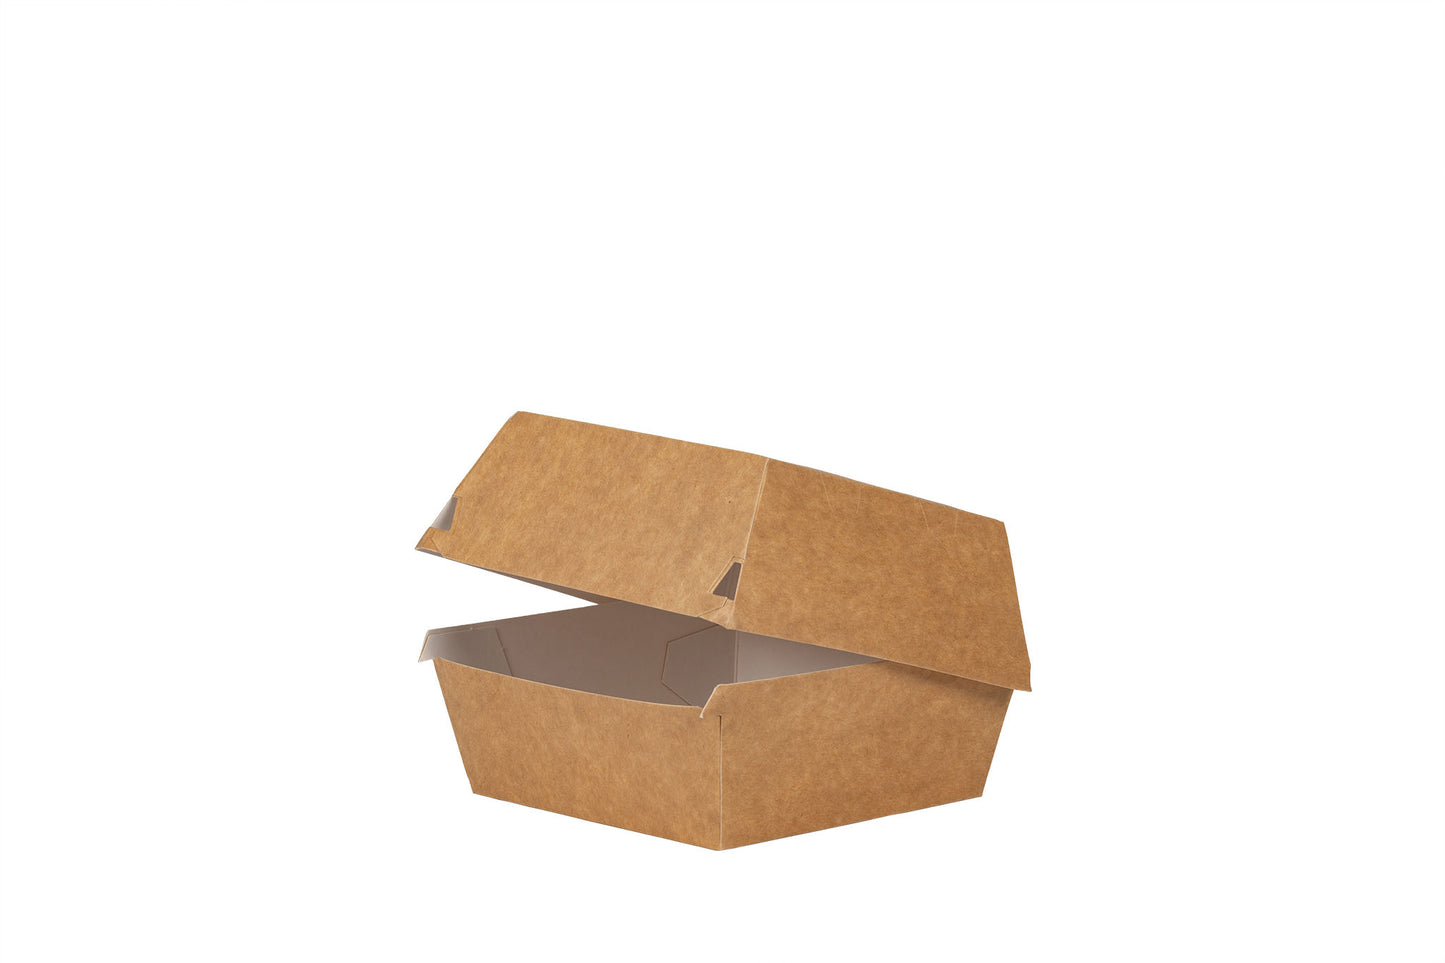 Das Bild zeigt die geöffnete Hamburger Box vertrieben von der Malik Verpackungen GmbH Hanau. Die Hamburger-Box ist aus Pappe. Die Farbe der Burger Box ist braun. Das Bild ist schrag von der Seite aufgenommen. Fotograf: Detlev Steinhilber (detis.pix)